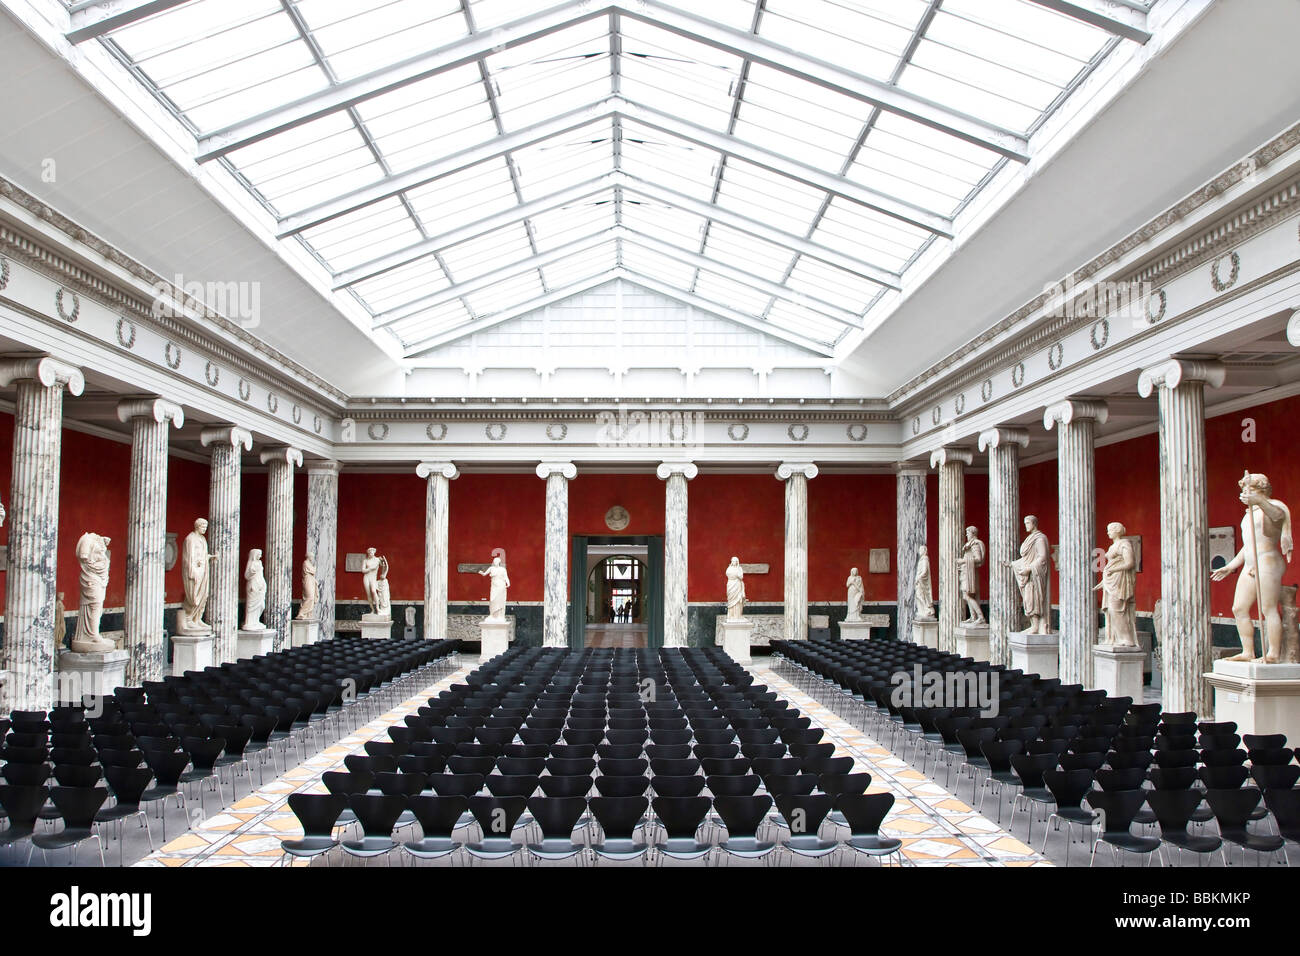 The Central Hall at Ny Carlsberg Glyptotek, Copenhagen, Denmark Stock Photo